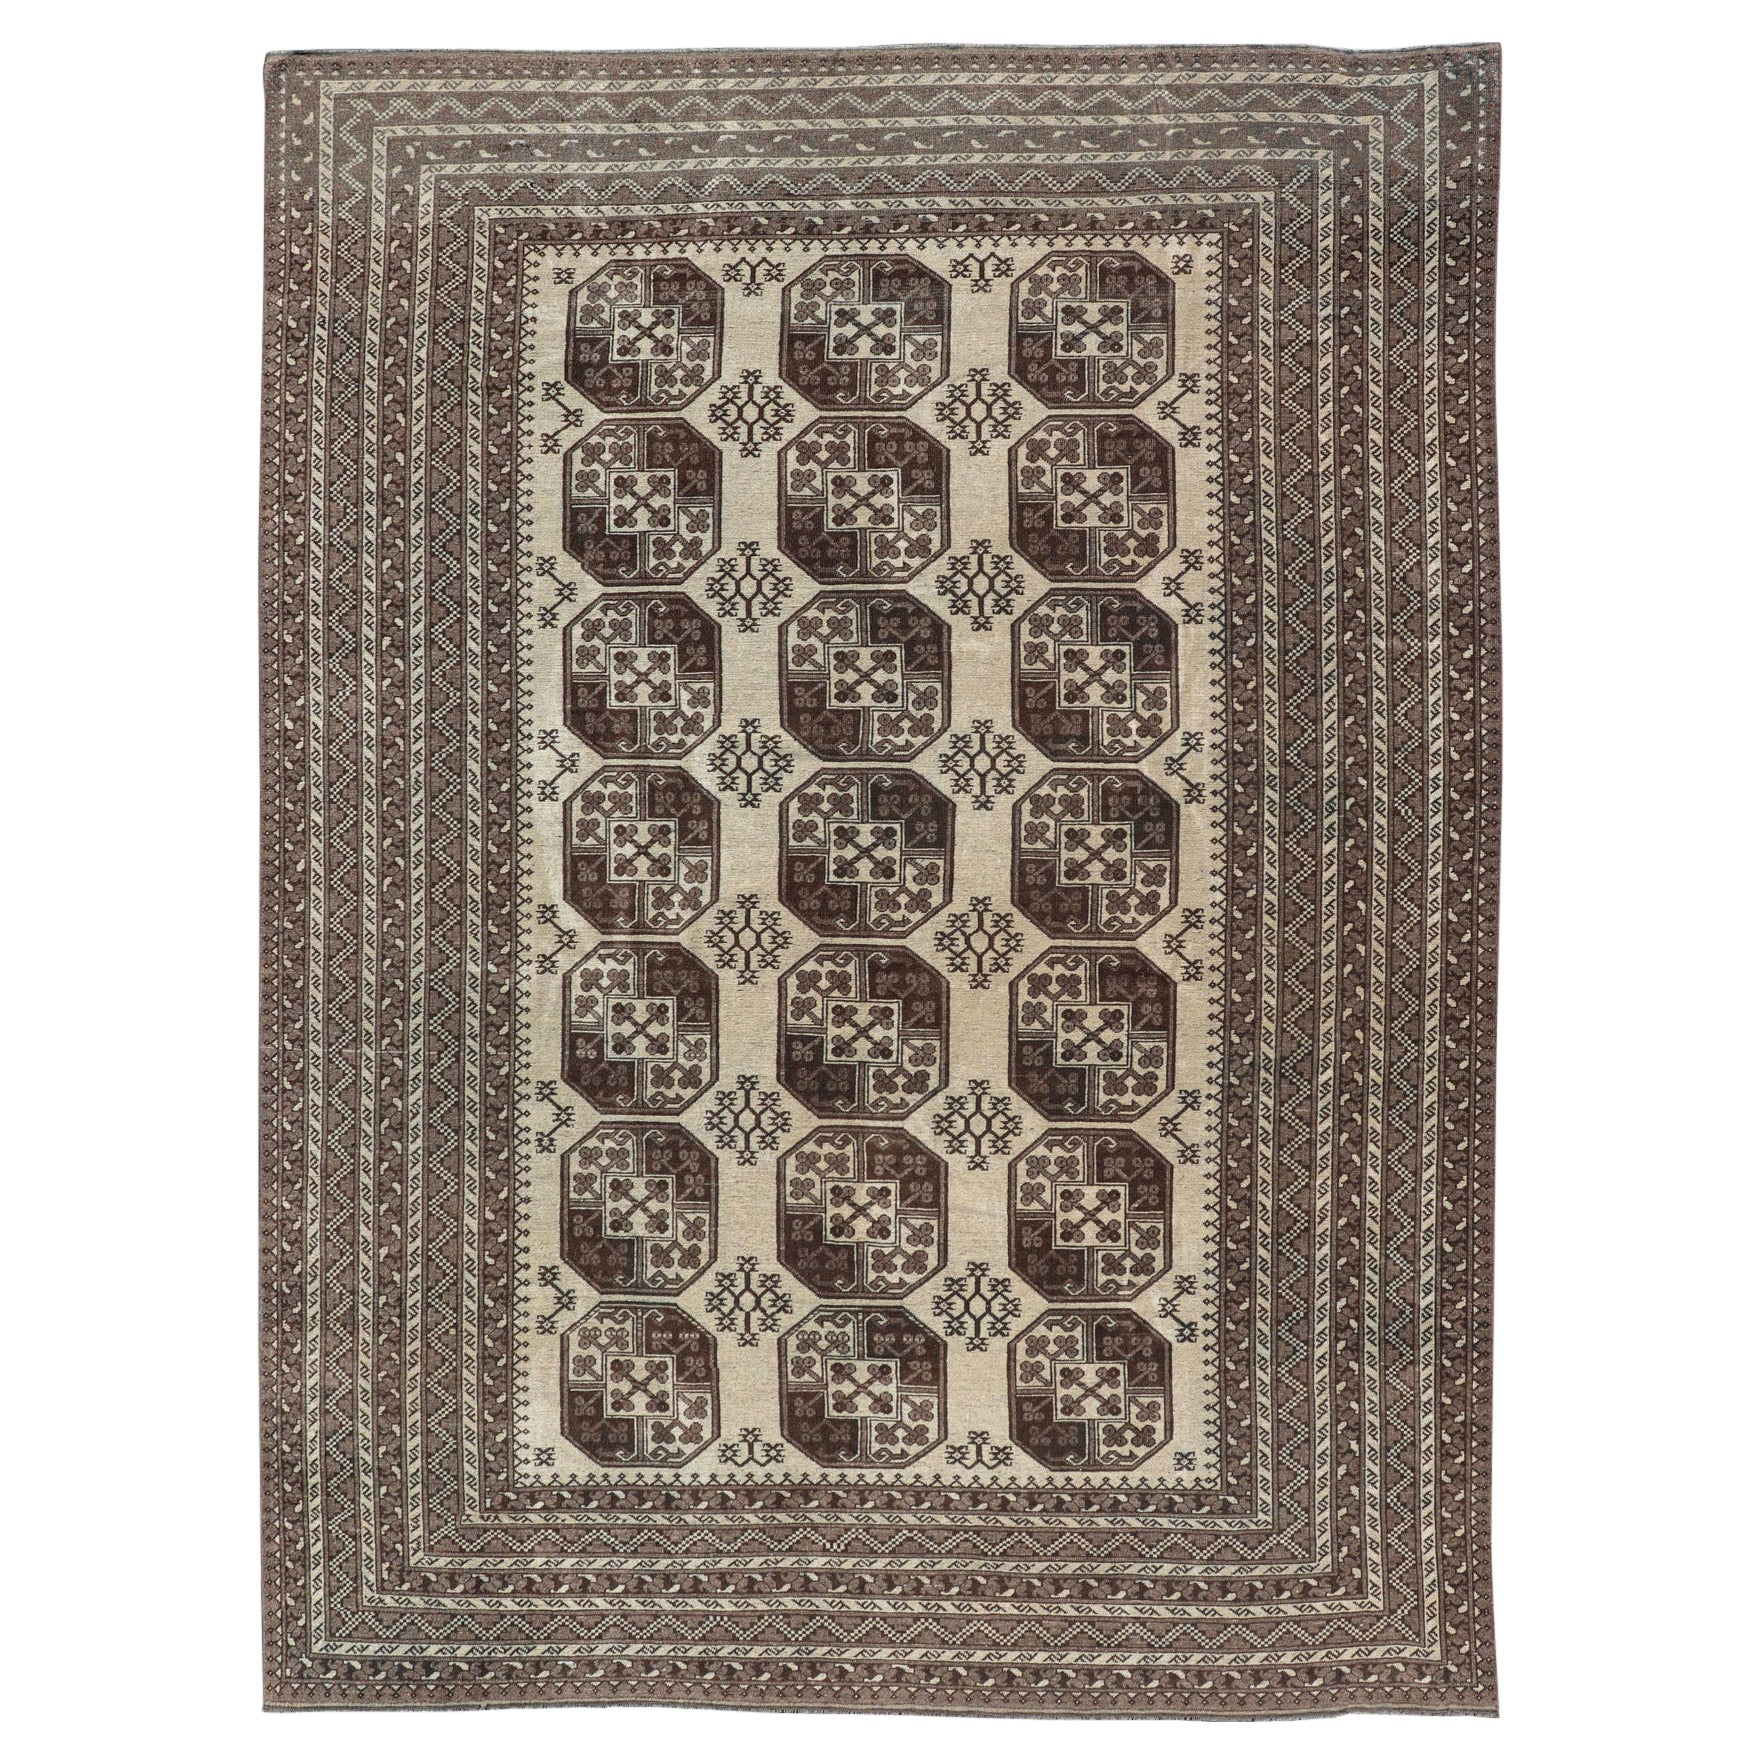 Turkomen Ersari Vintage-Teppich aus Wolle mit wiederkehrendem Gul-Design